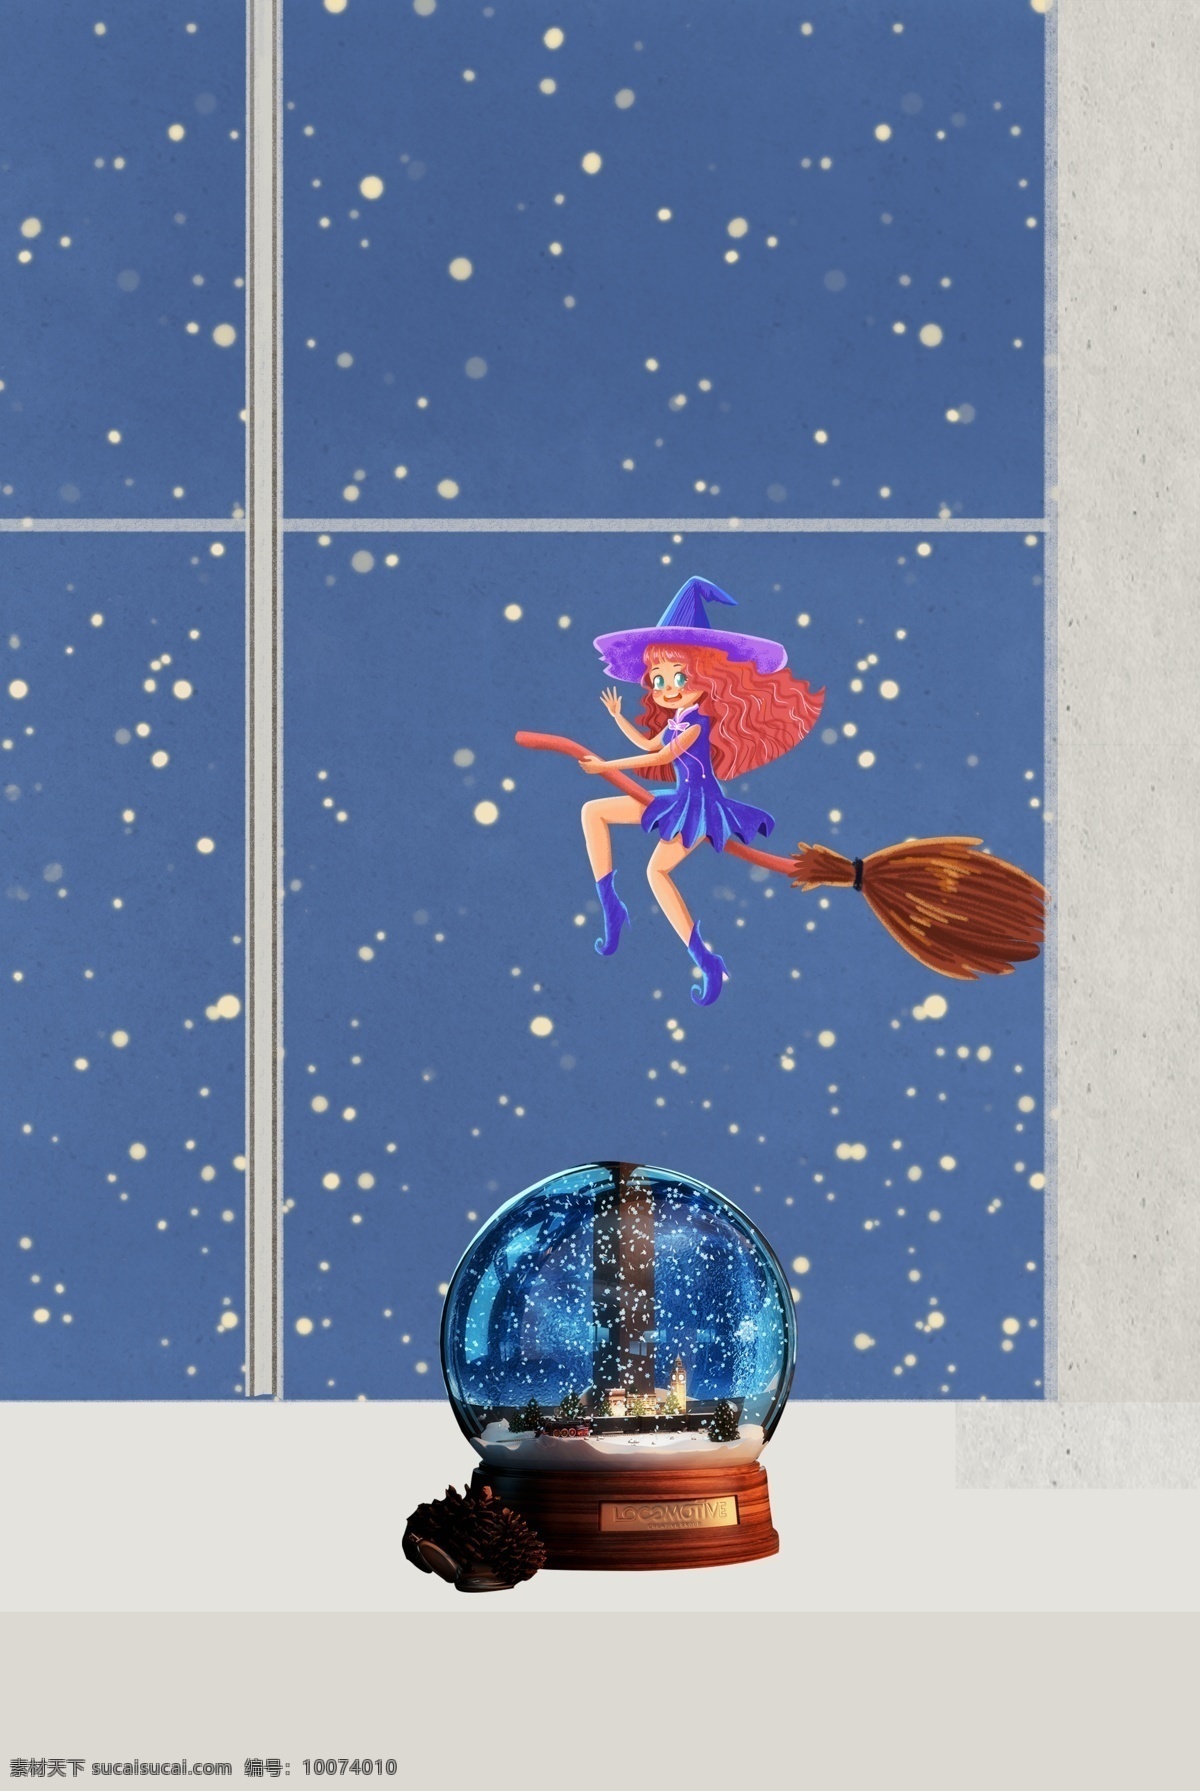 文艺 卡通 可爱 梦幻 水晶球 背景 宣传海报 大雪 传统 二十四节气 魔女